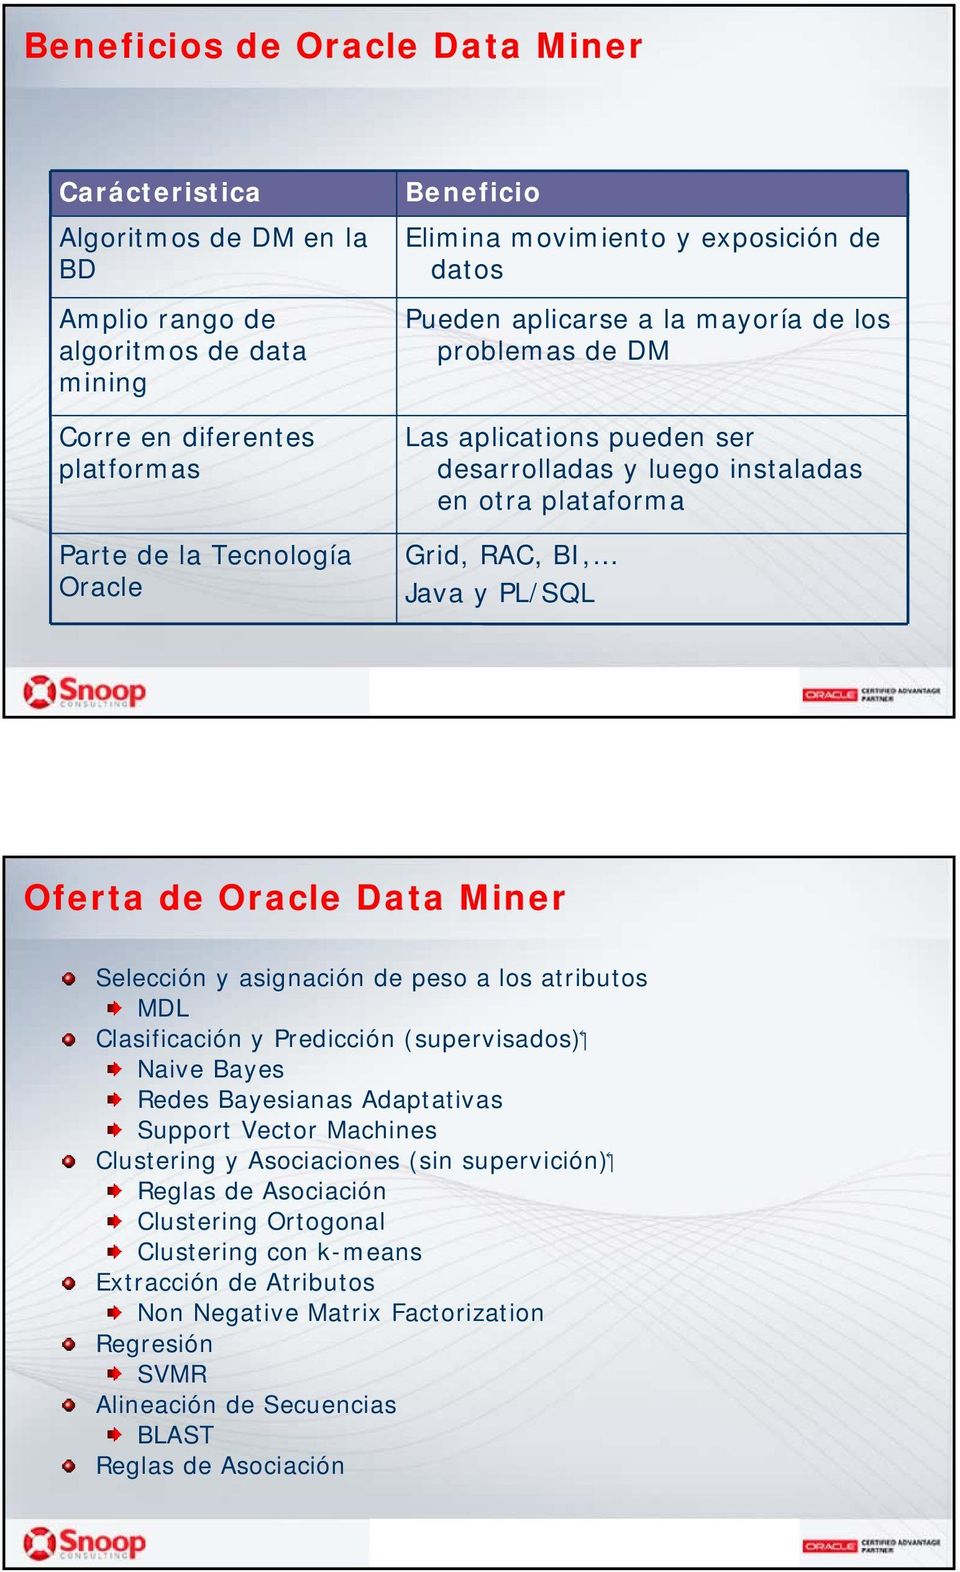 Oferta de Oracle Data Miner Selección y asignación de peso a los atributos MDL ( supervisados ) Clasificación y Predicción Naive Bayes Redes Bayesianas Adaptativas Support Vector Machines (